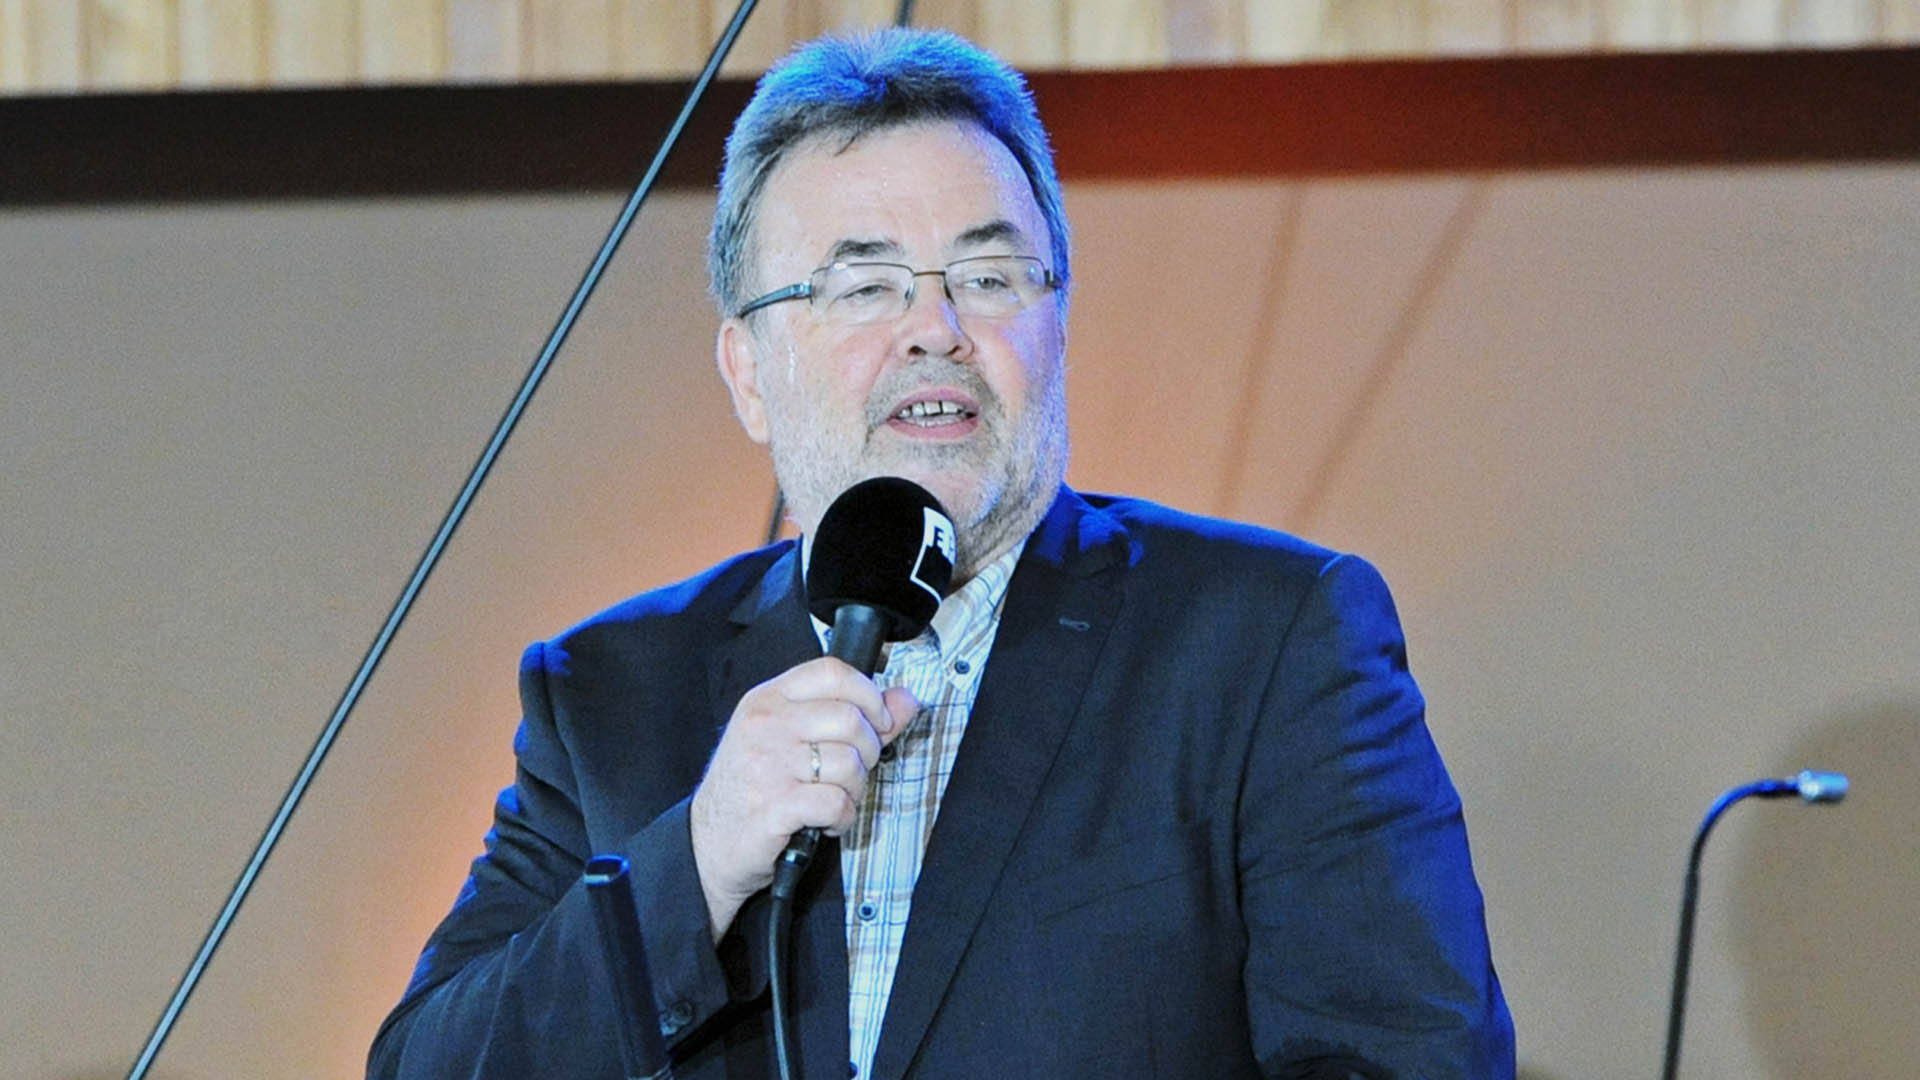 Ekkehart Vetter ist seit Januar dieses Jahres Vorsitzender der Deutschen Evangelischen Allianz. Er ist hauptamtlich Präses des freikirchlichen Mühlheimer Verbandes.